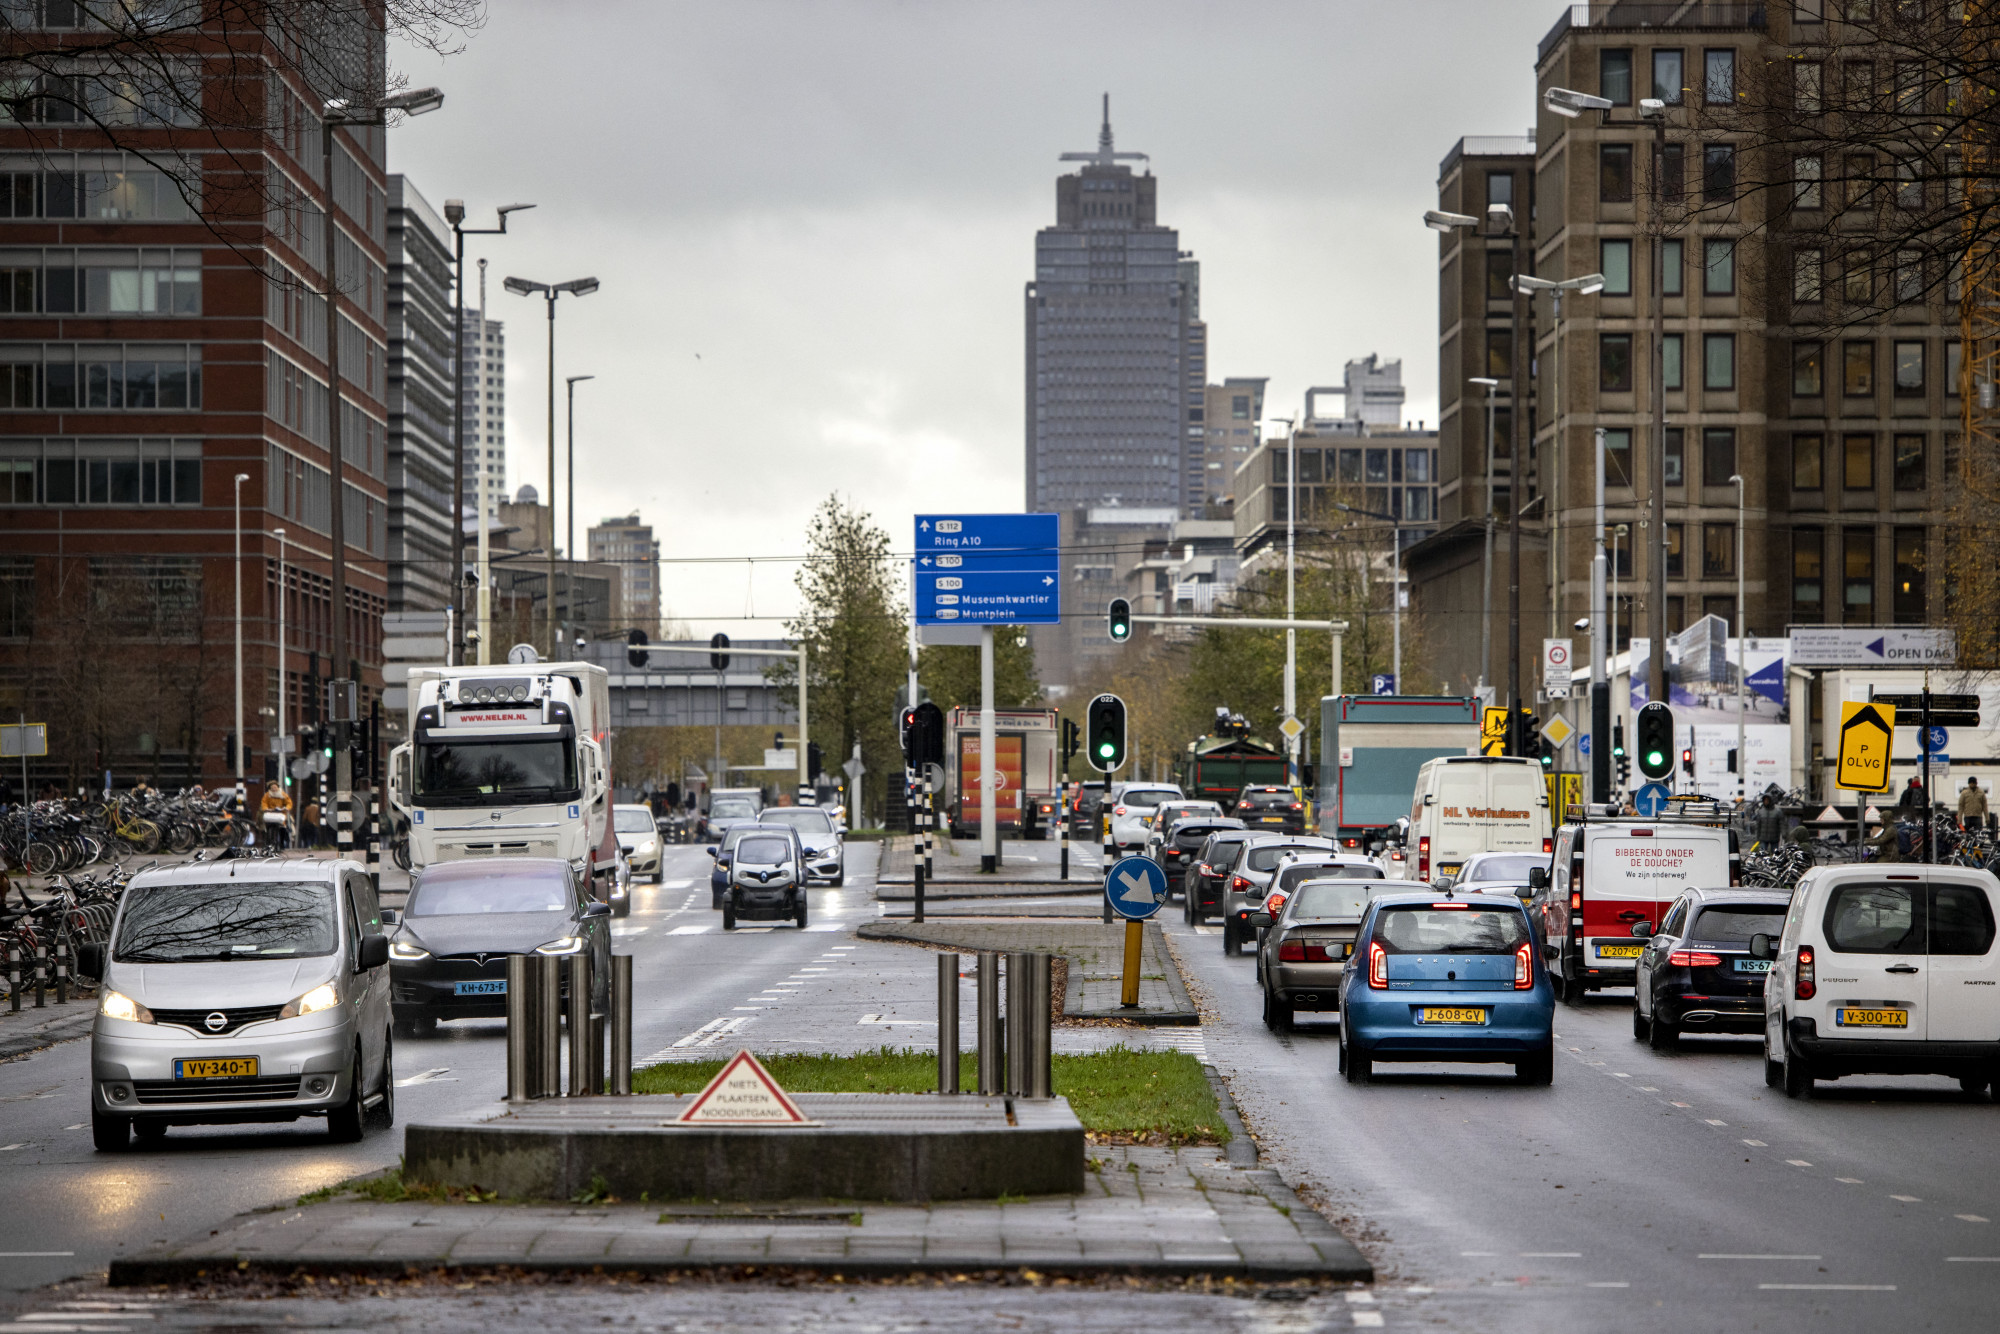 Kitiltották az autókat Amszterdam egyik legforgalmasabb útjáról